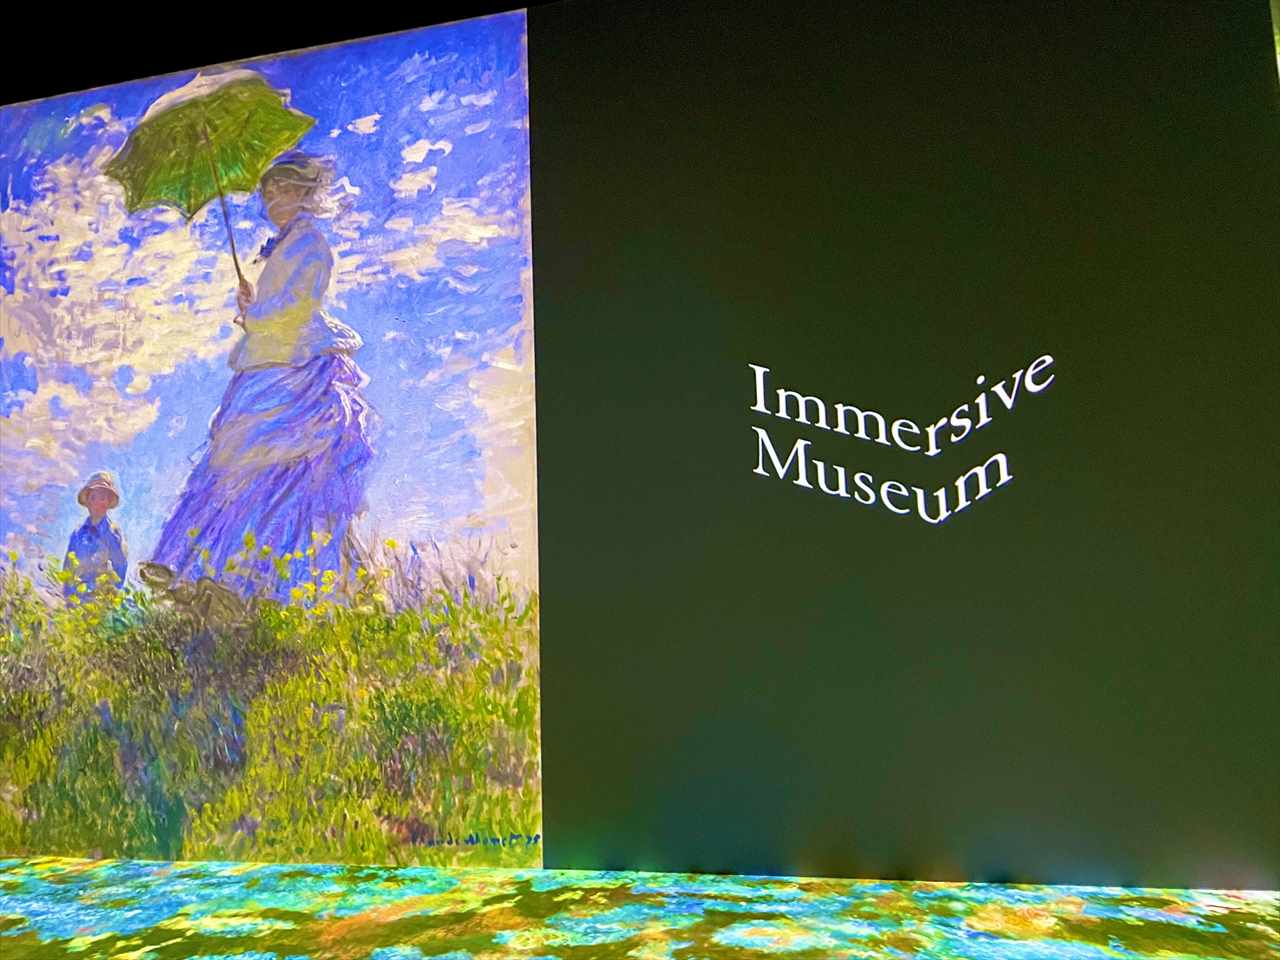 【話題の没入型アート展】モネの睡蓮も！「イマーシブミュージアム」で360度印象派の世界を体験